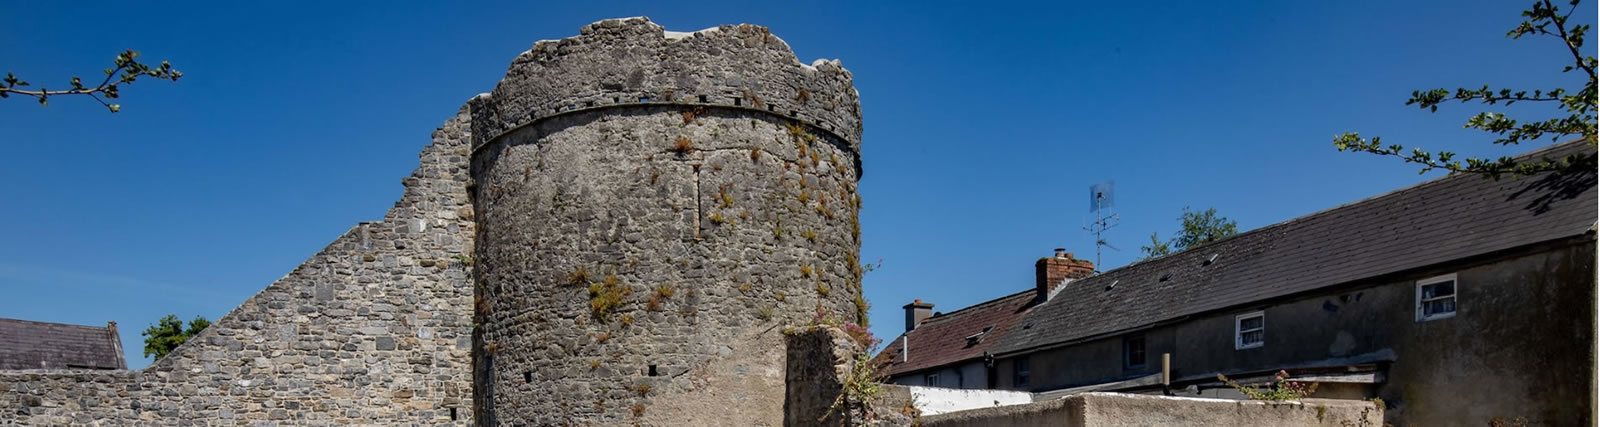 Talbots Tower Kilkenny miesto sienos